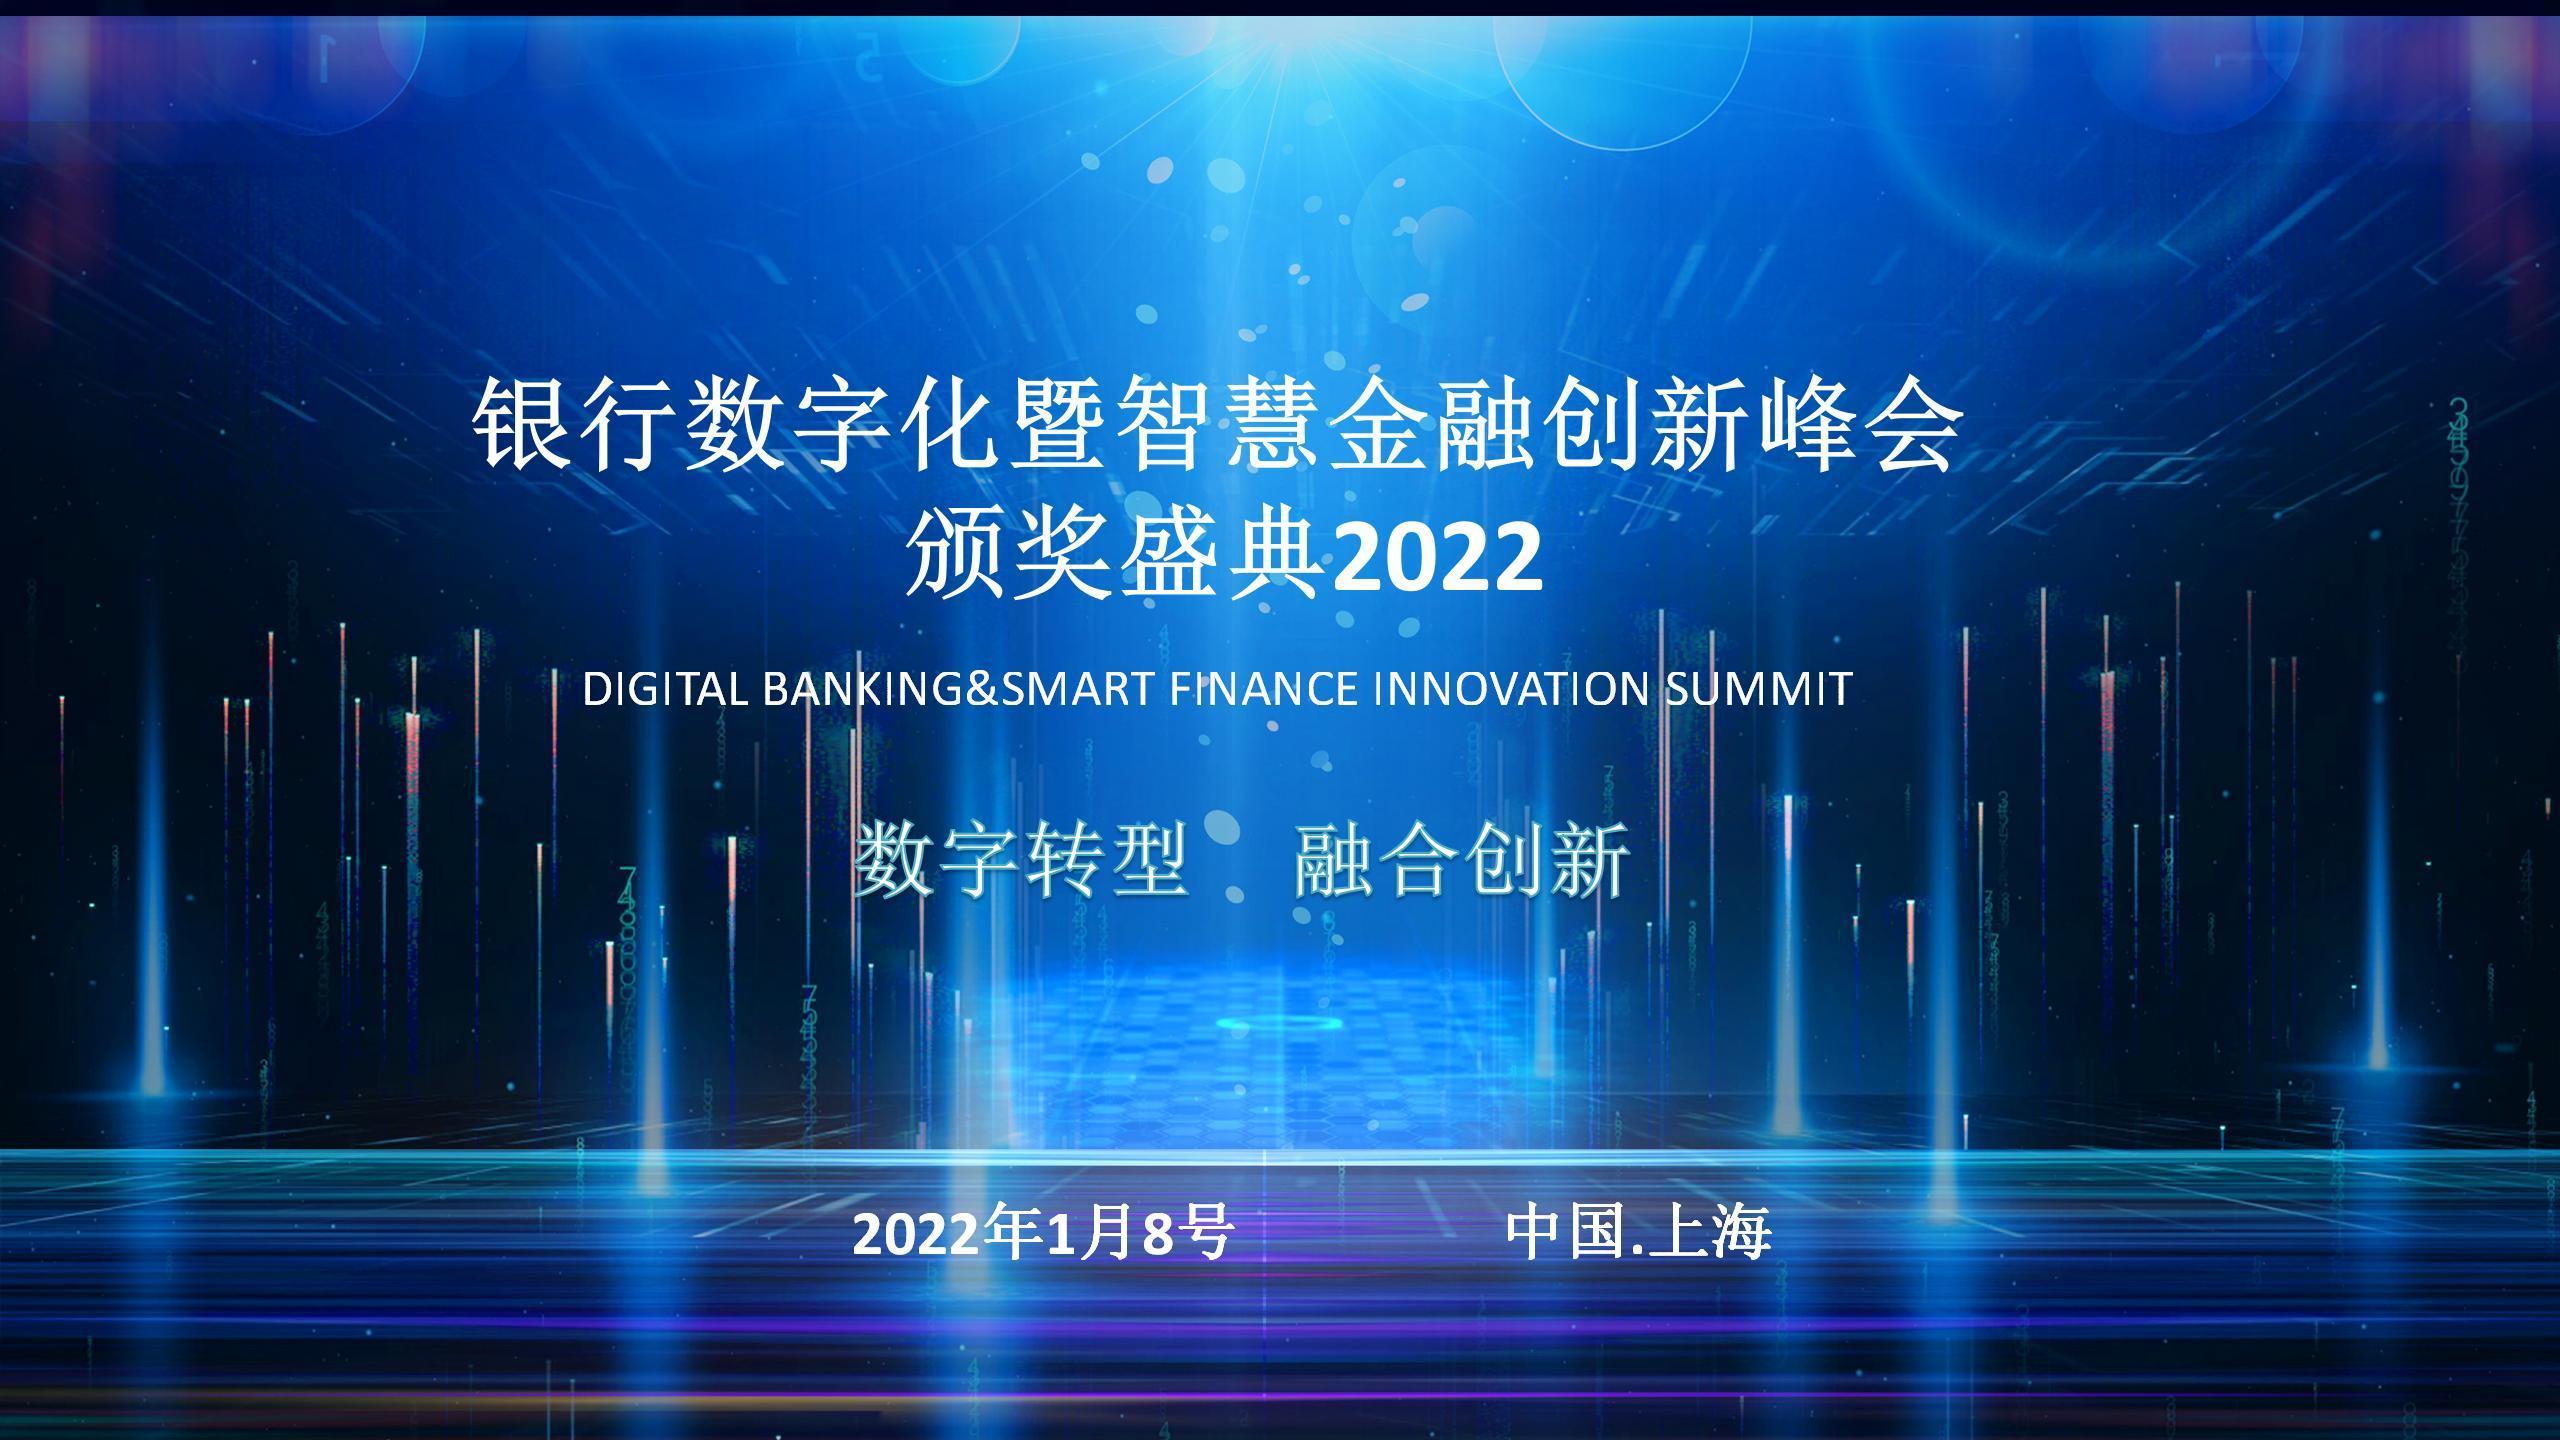 2022银行数字化暨智慧金融创新峰会颁奖典礼